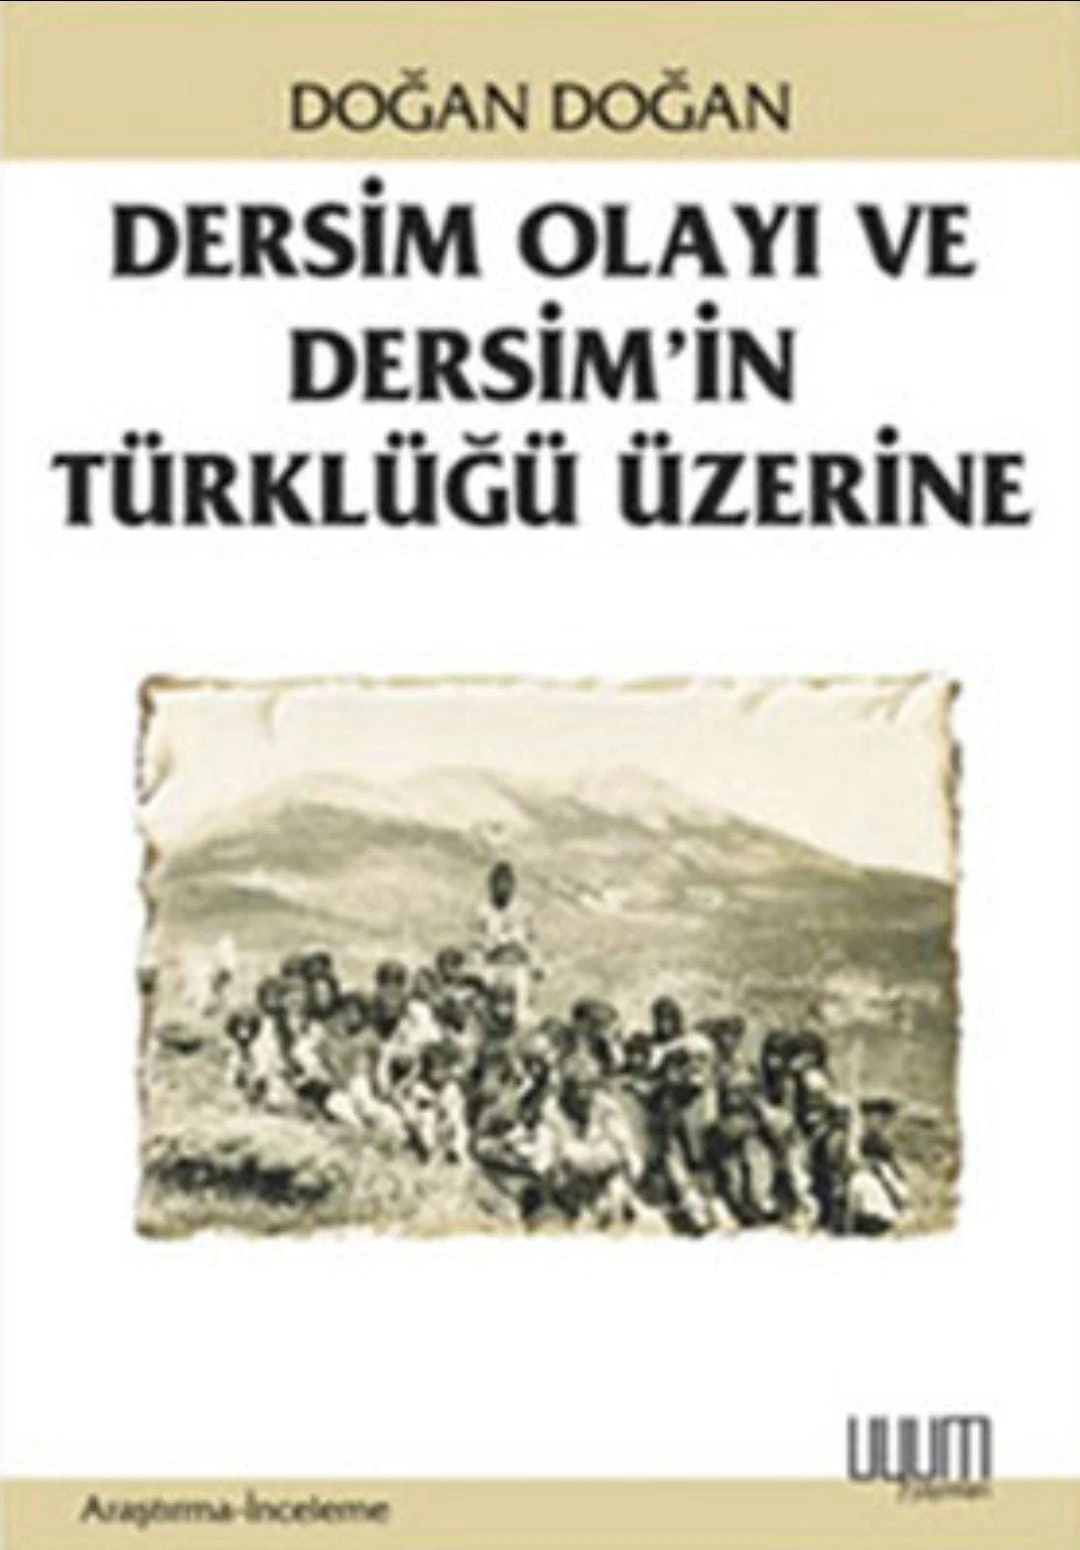 Başbuğ Atatürk'ün tarih tezi özeti ve Anadolu'nun 7000 yıllık Türklüğü üzerinden tuncun eli Tunceli